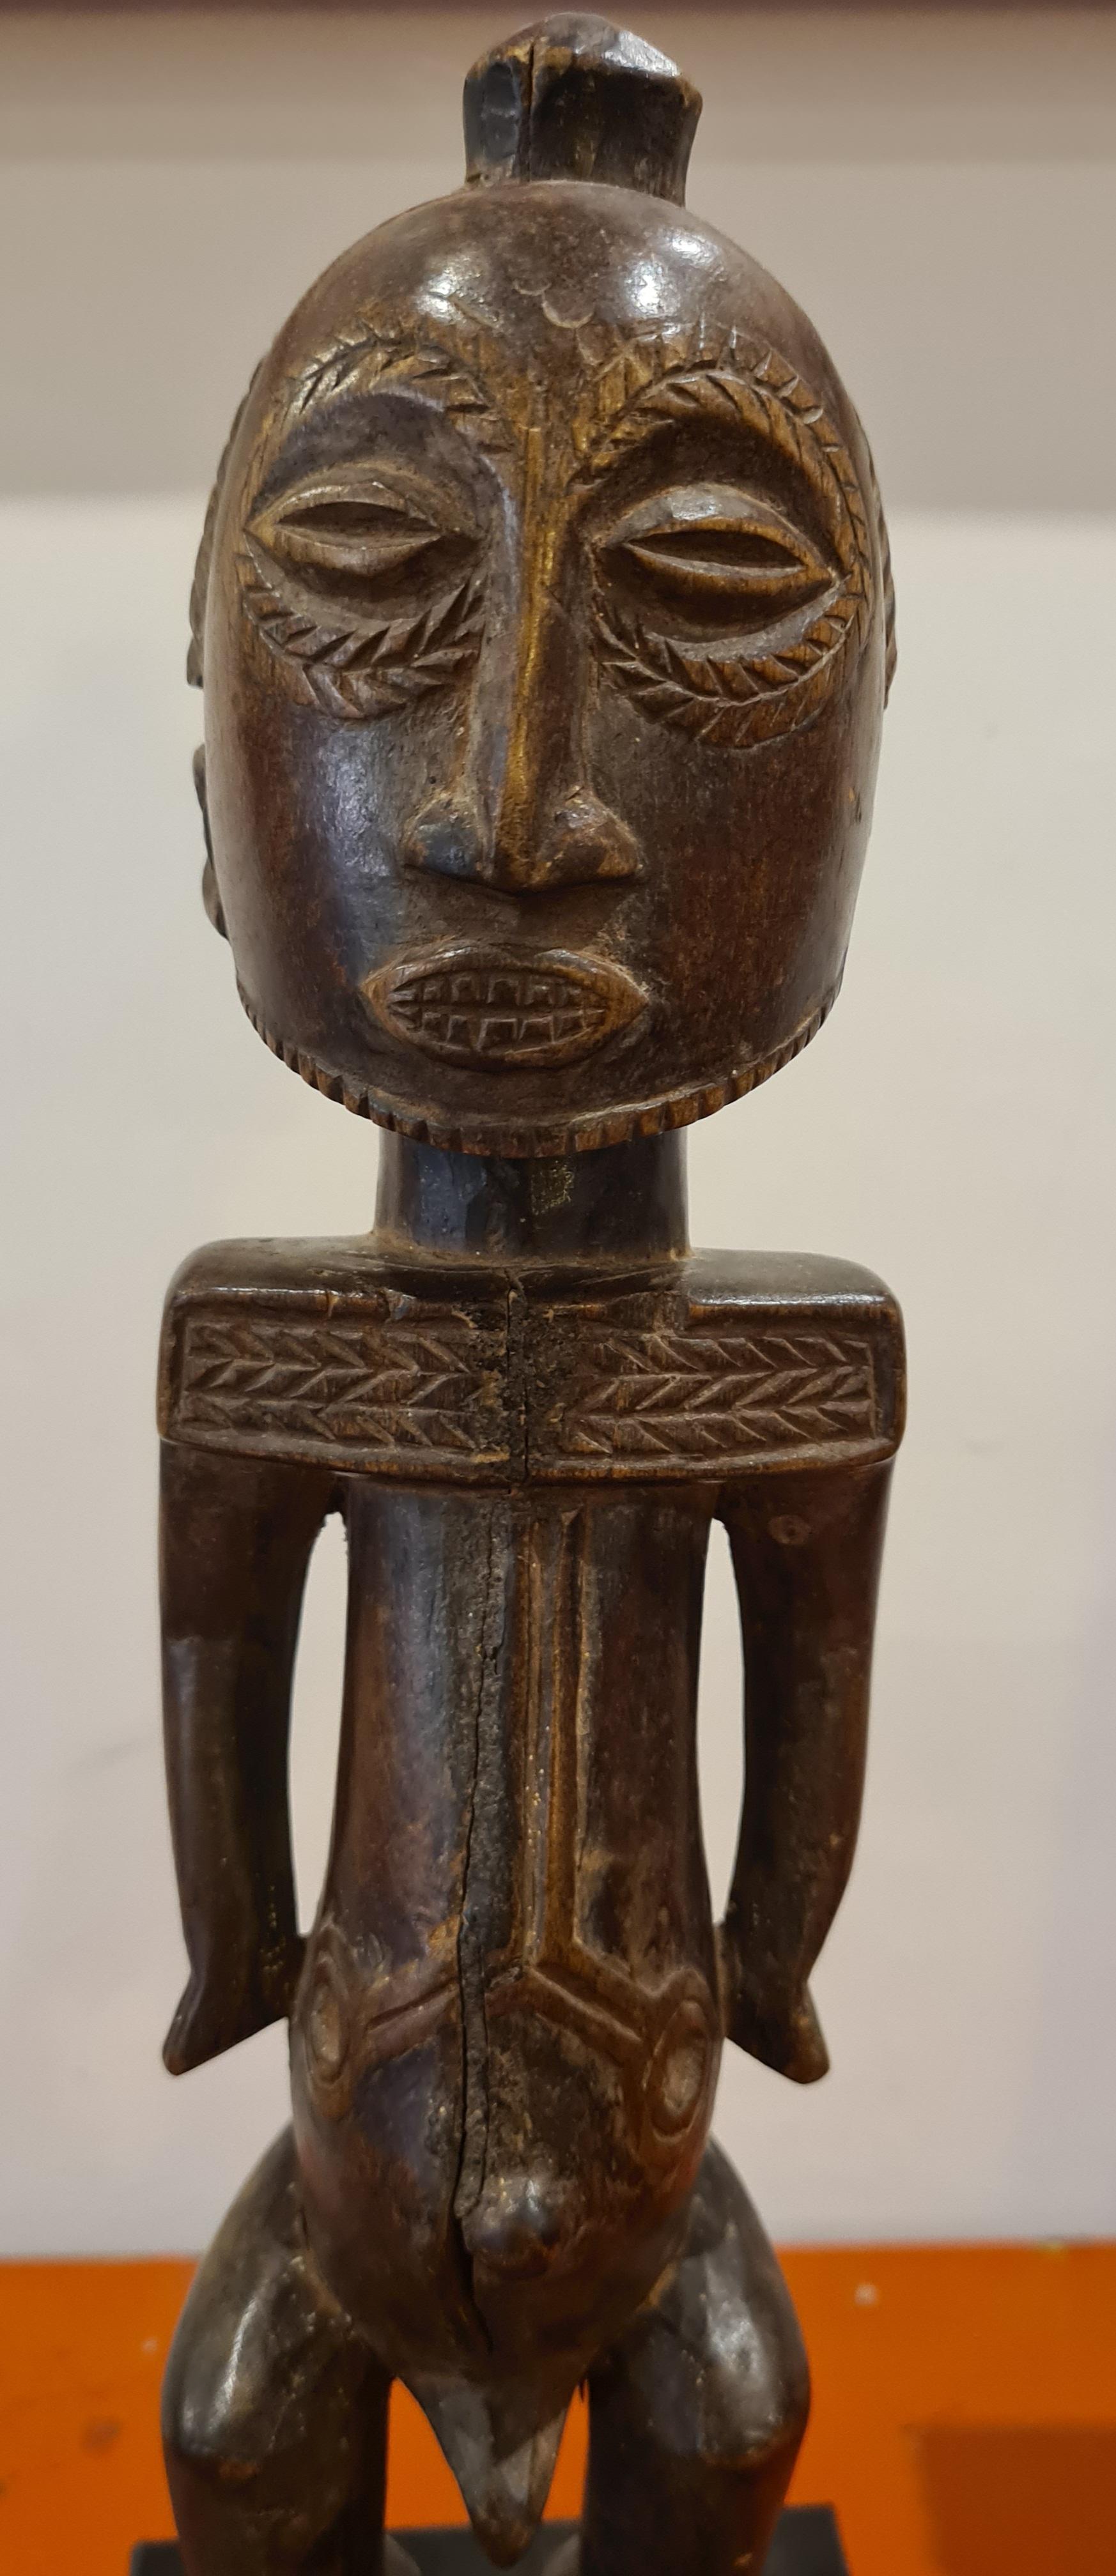 Eine aus Holz geschnitzte männliche Stammesfigur aus der Mitte des 20. Jahrhunderts, Luba Hamba.

Stehend, die Arme frei vom Körper und die Hände seitlich vom Bauch, die Rundfrisur mit erhabenem 